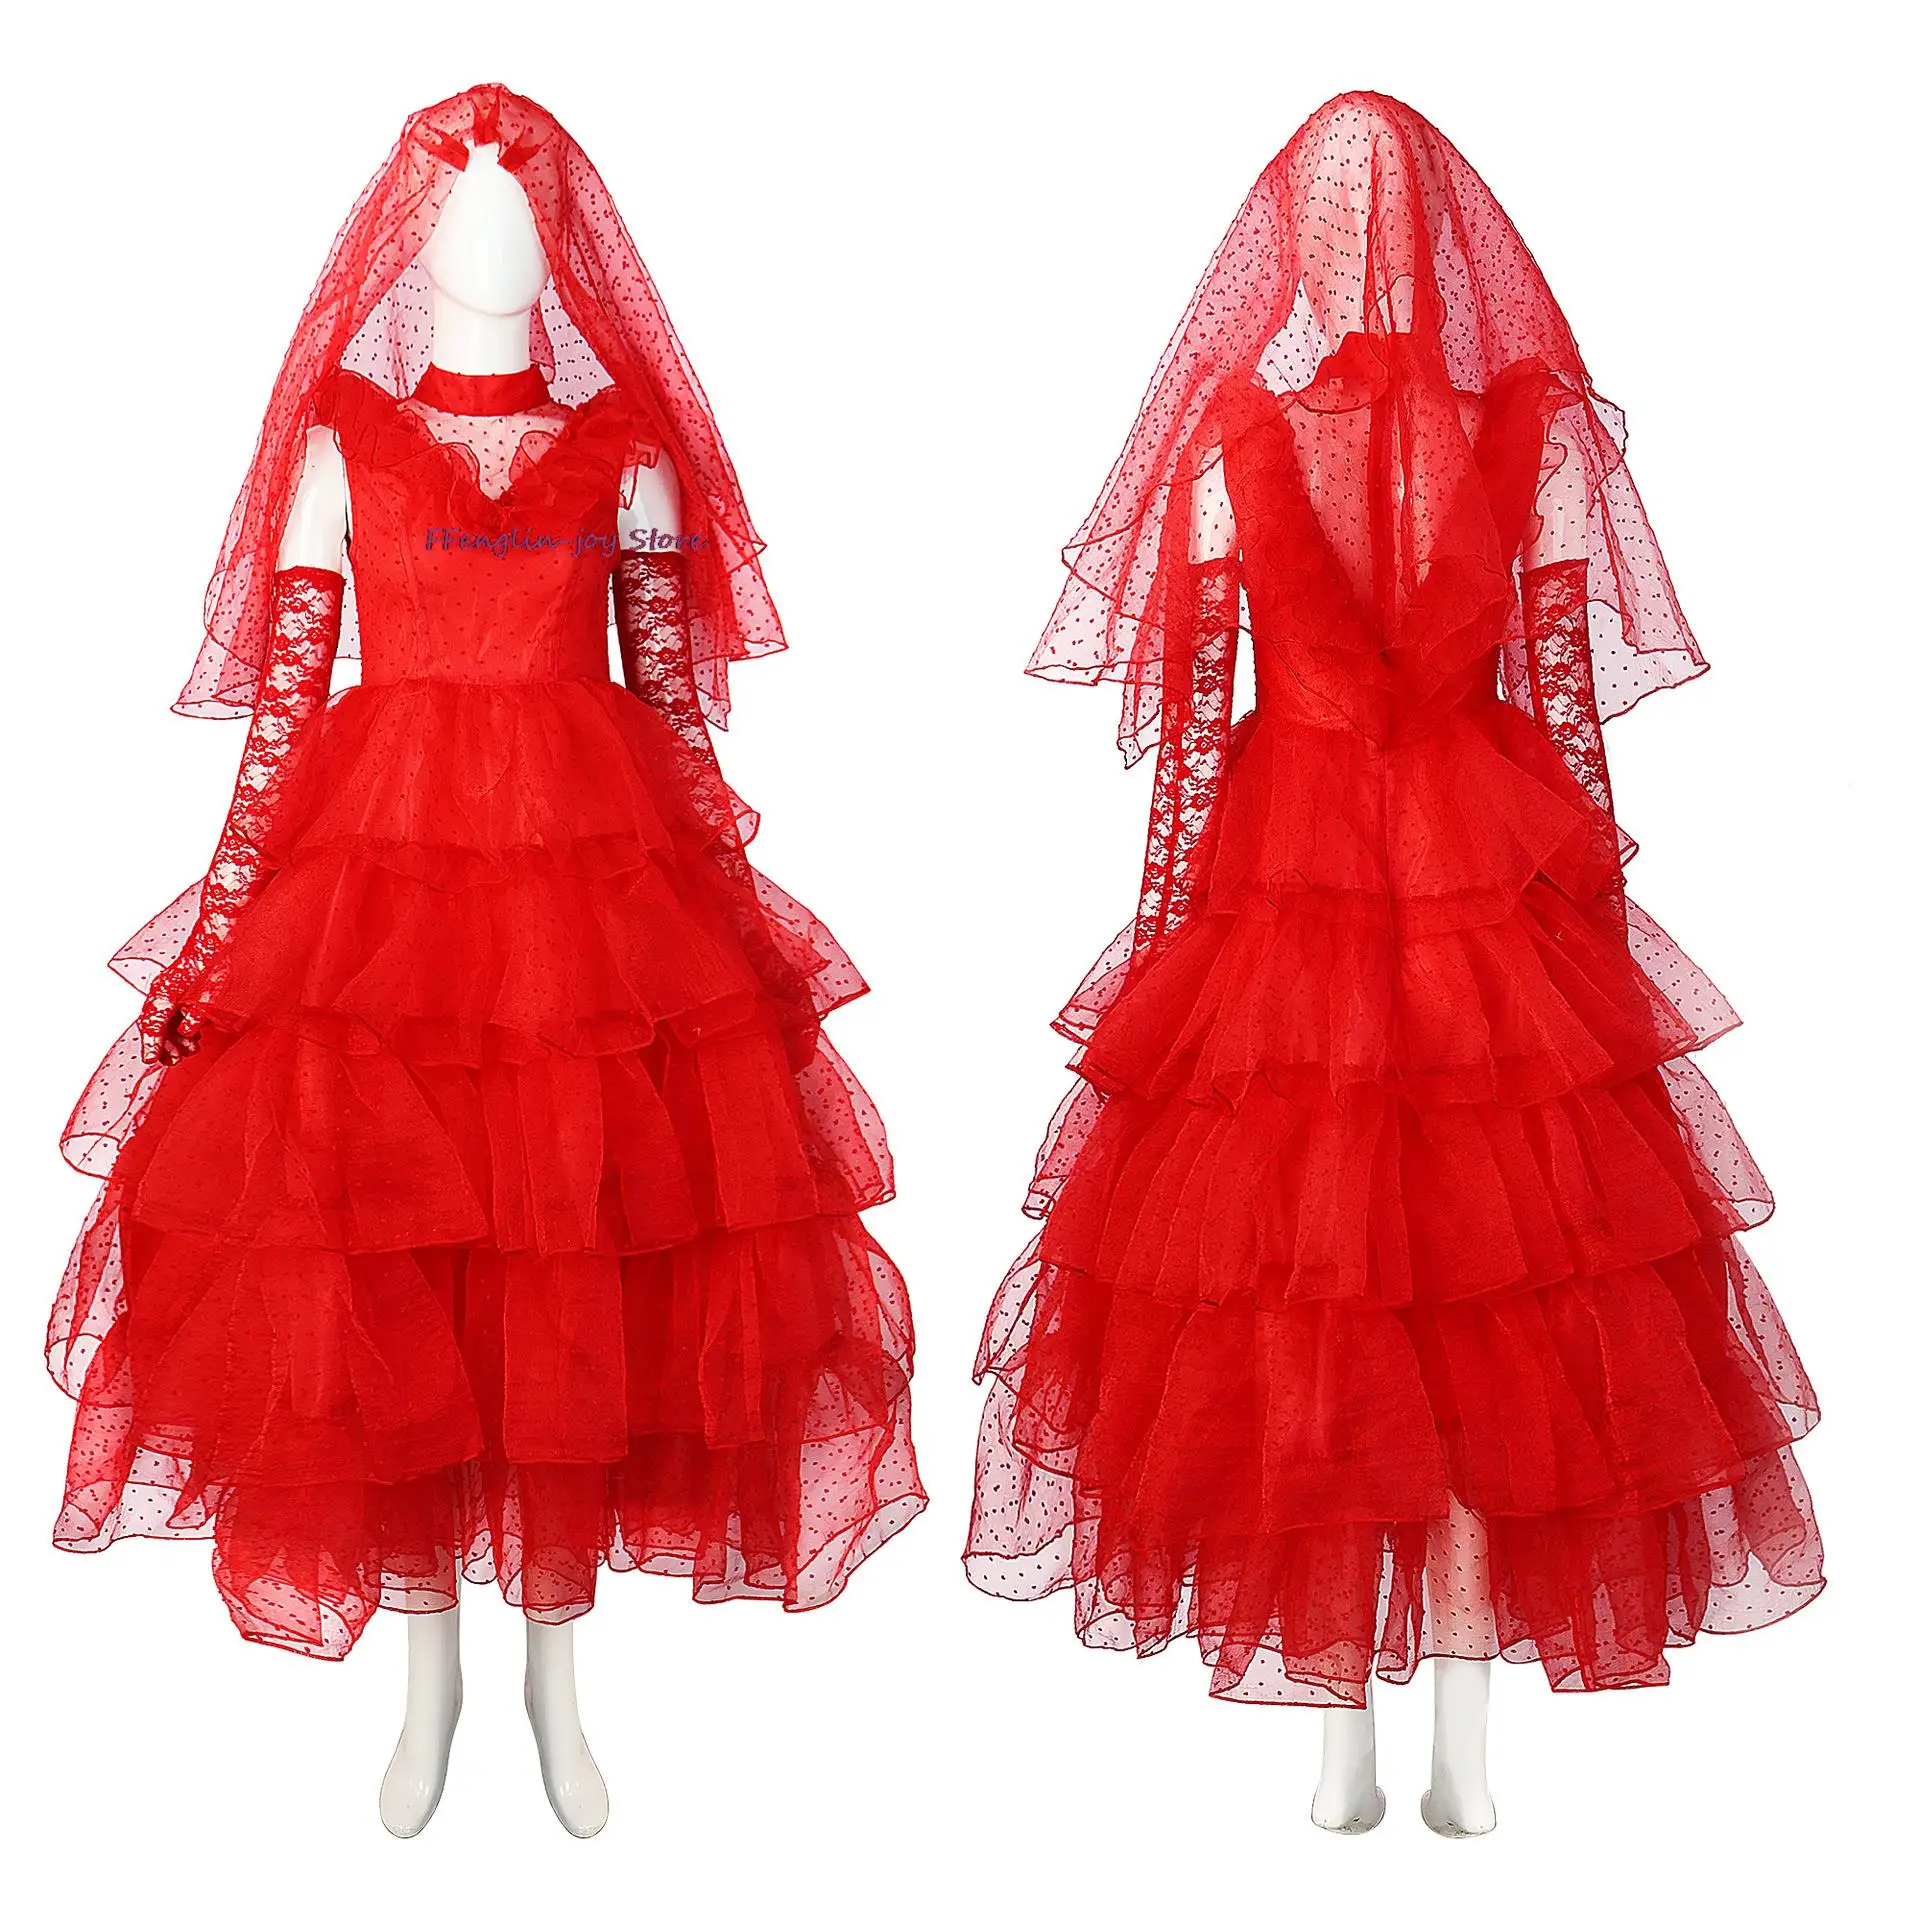 

Lydia косплей аниме костюм жука красная Униформа свадебное платье женский костюм